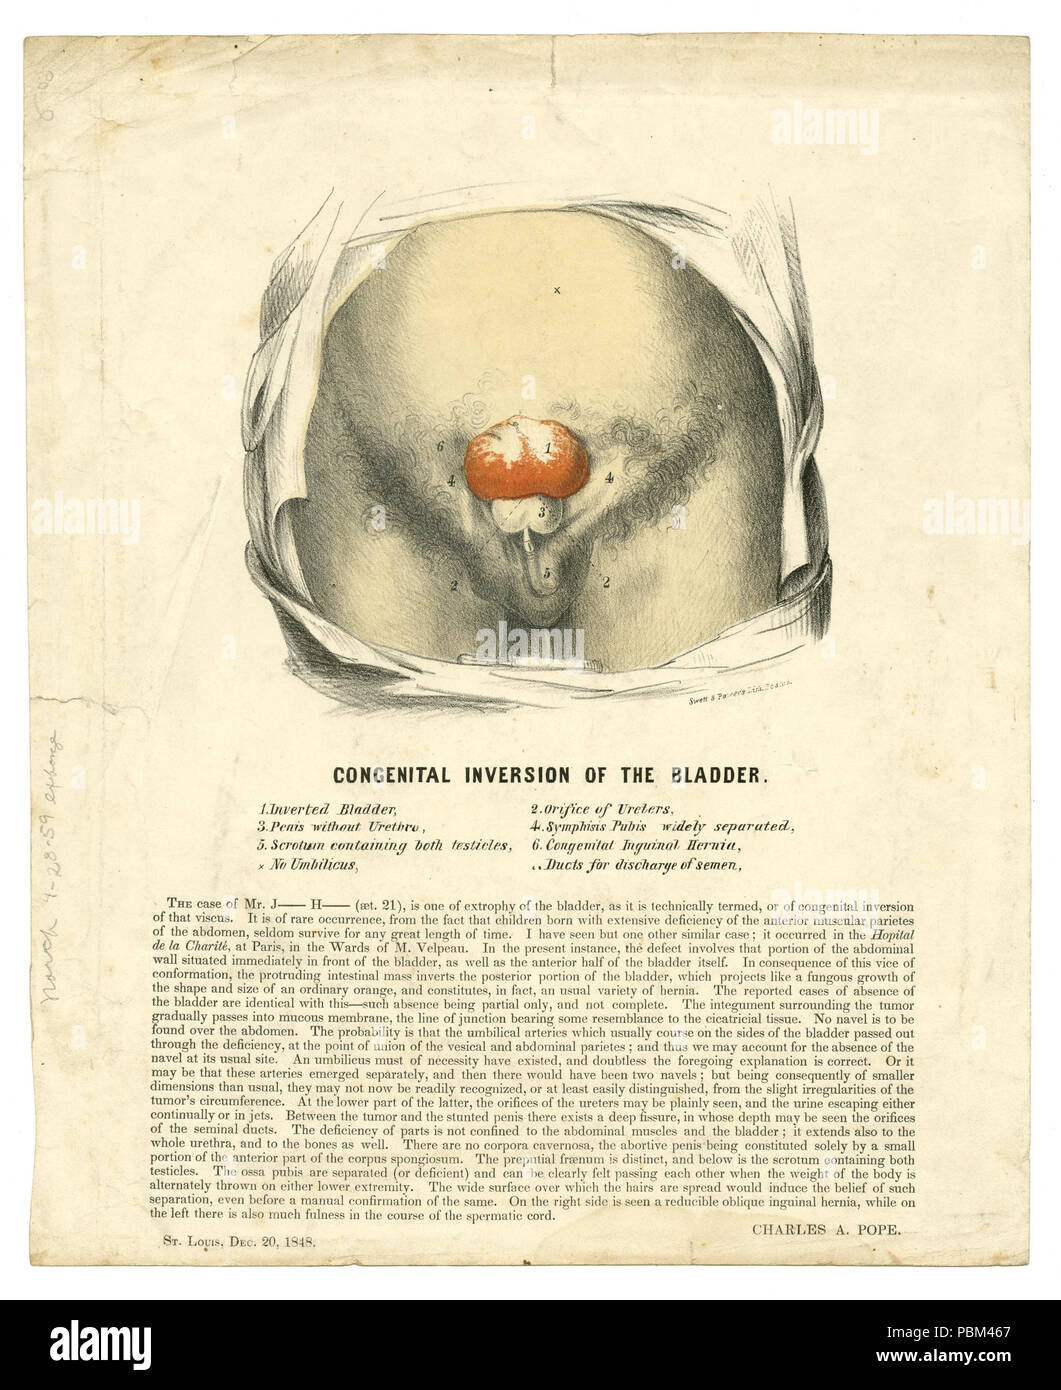 789 l'illustre l'affiche de la médecine, imprimé, montrant les effets de l'Inversion congénitale de la vessie, le 20 décembre 1848 Banque D'Images